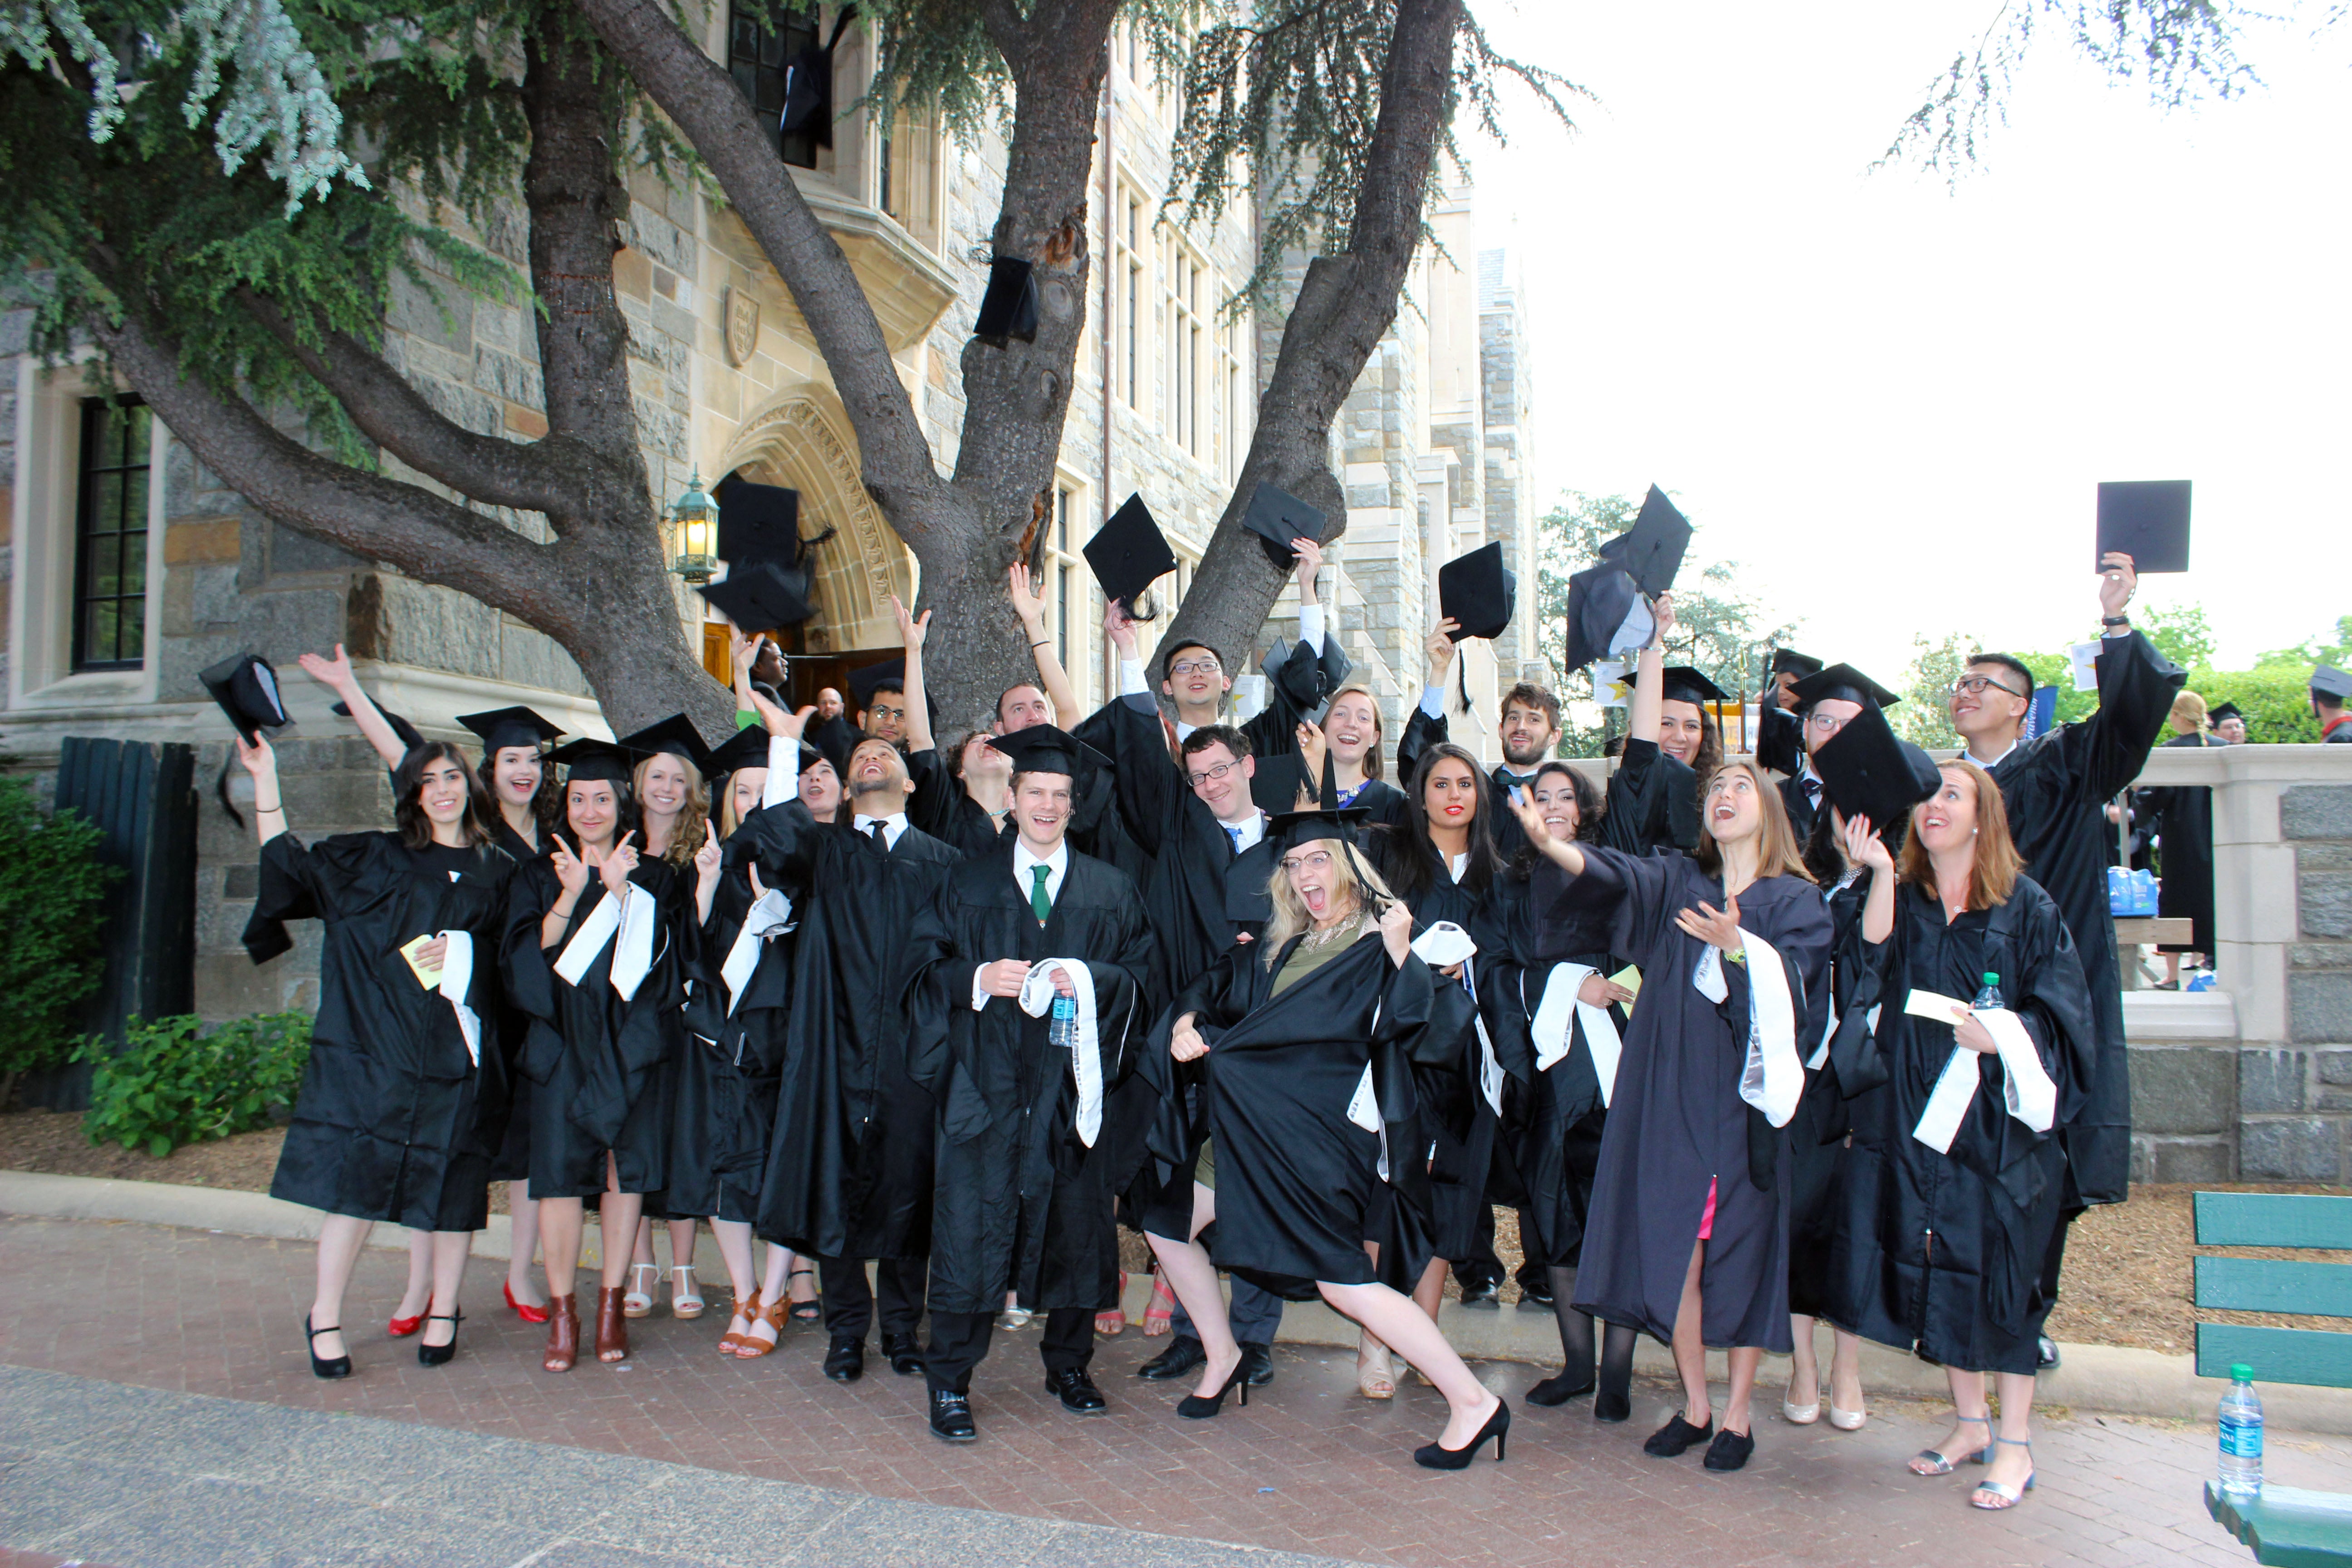 Group photo at graduation